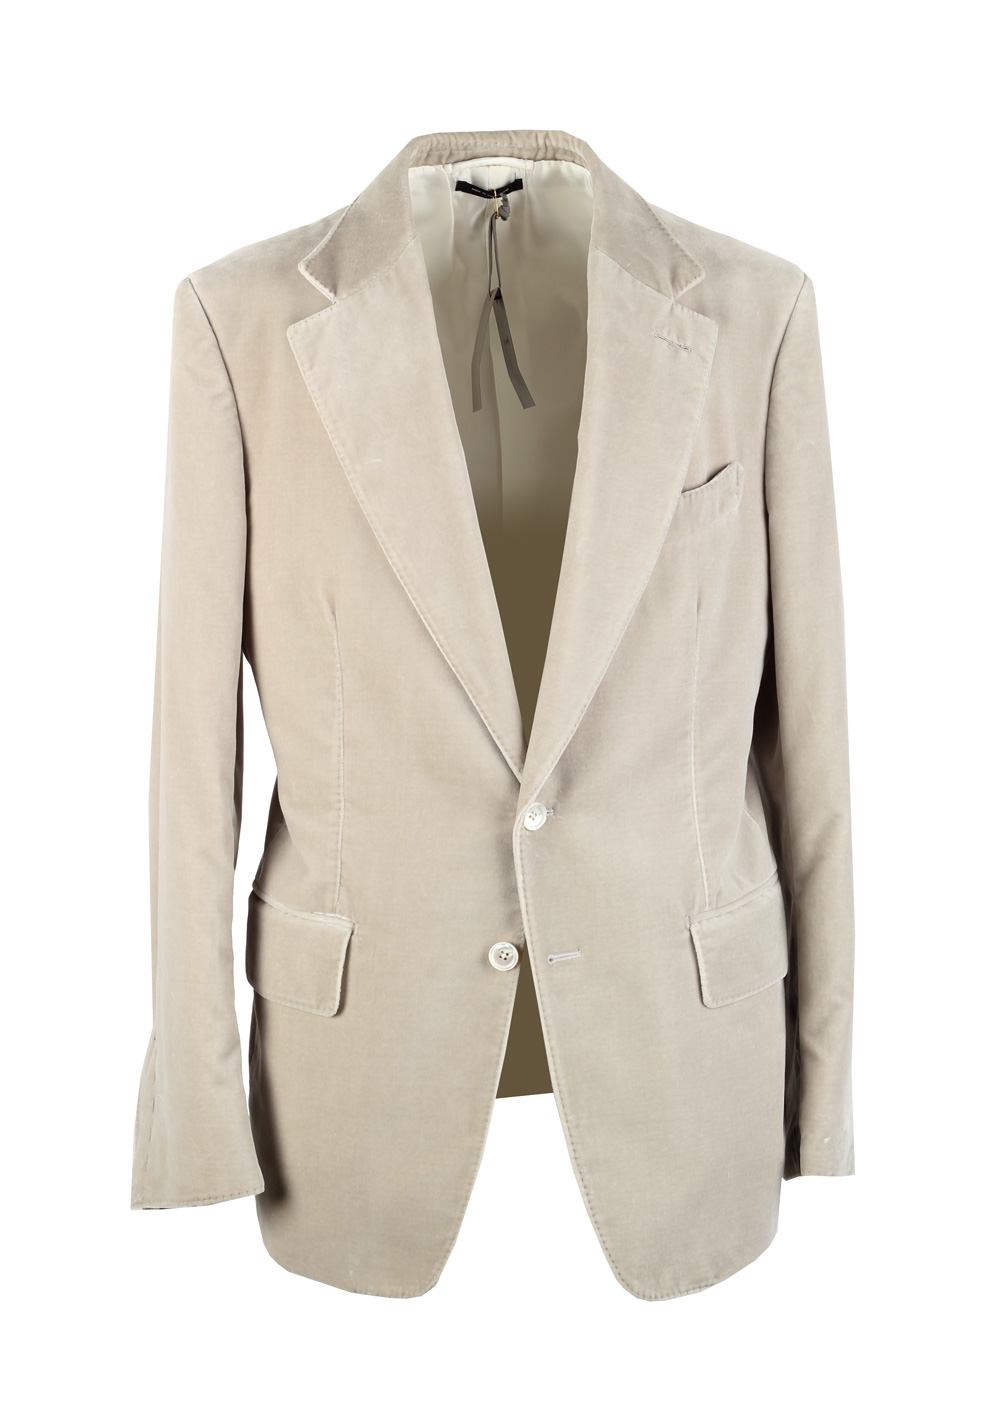 TOM FORD Shelton Velvet Beige Sport Coat Size 50 / 40R U.S. Cotton ...